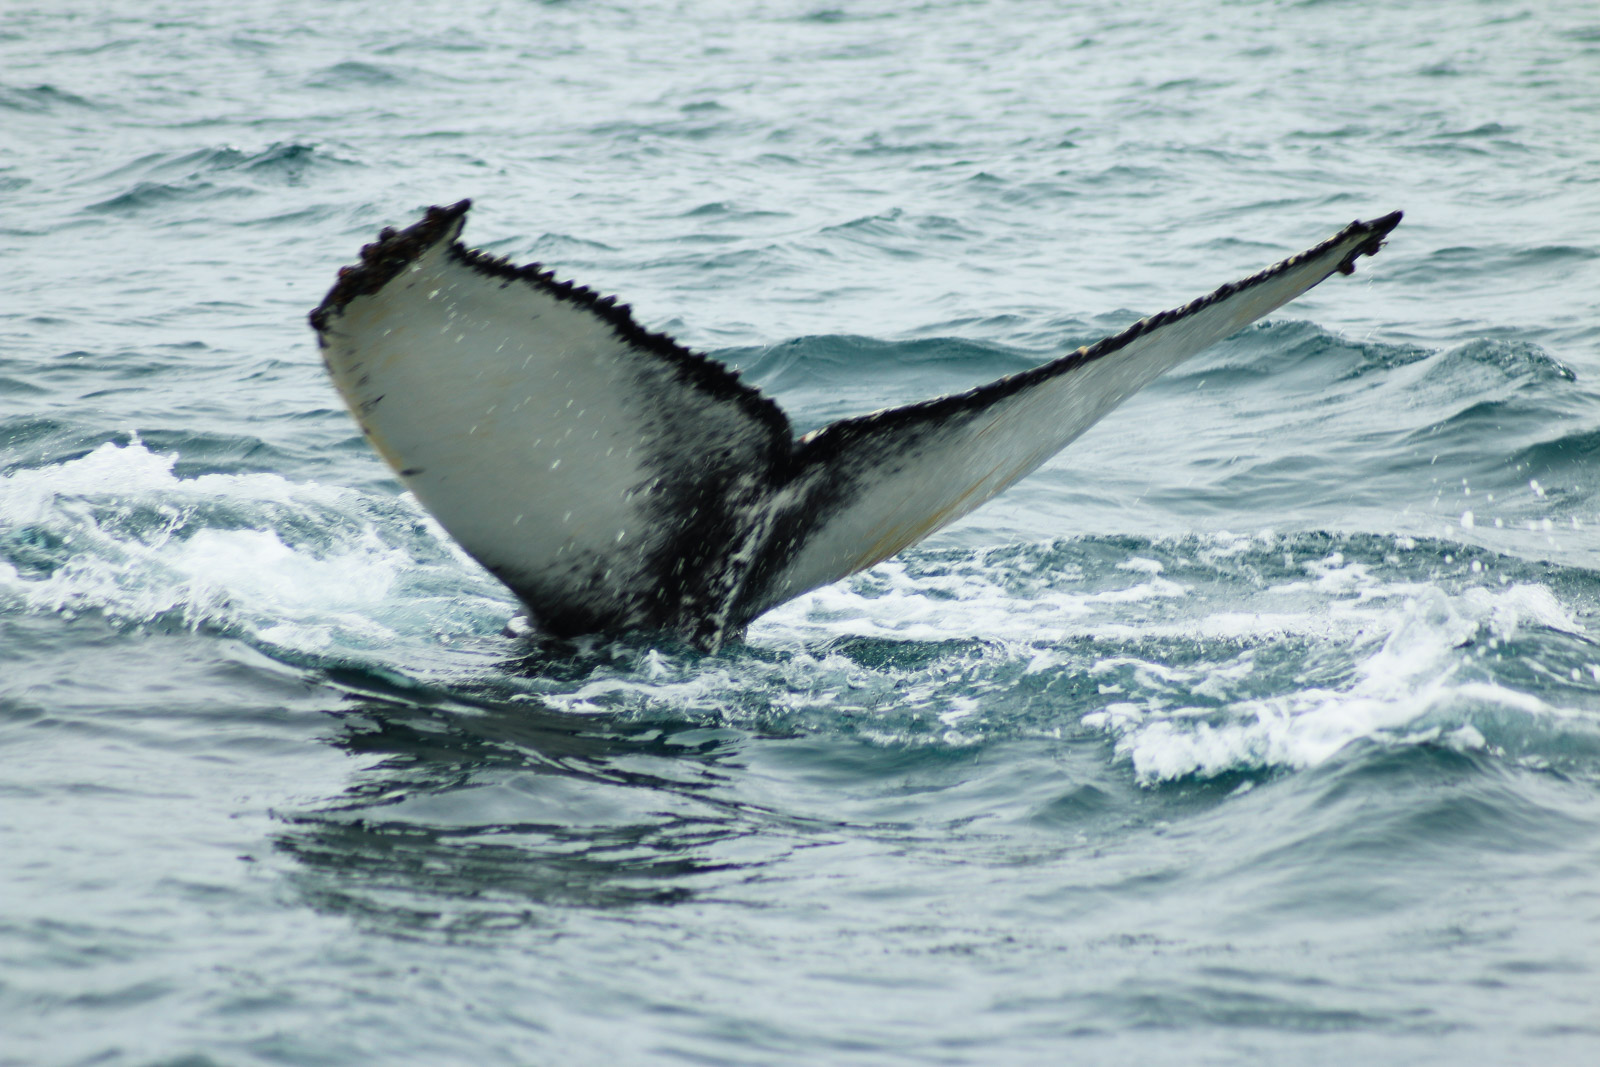 Die Fluke des Buckelwals zeichnet jedes Tier aus. Anhand ihrer kann man die Tiere einzeln identifizieren.